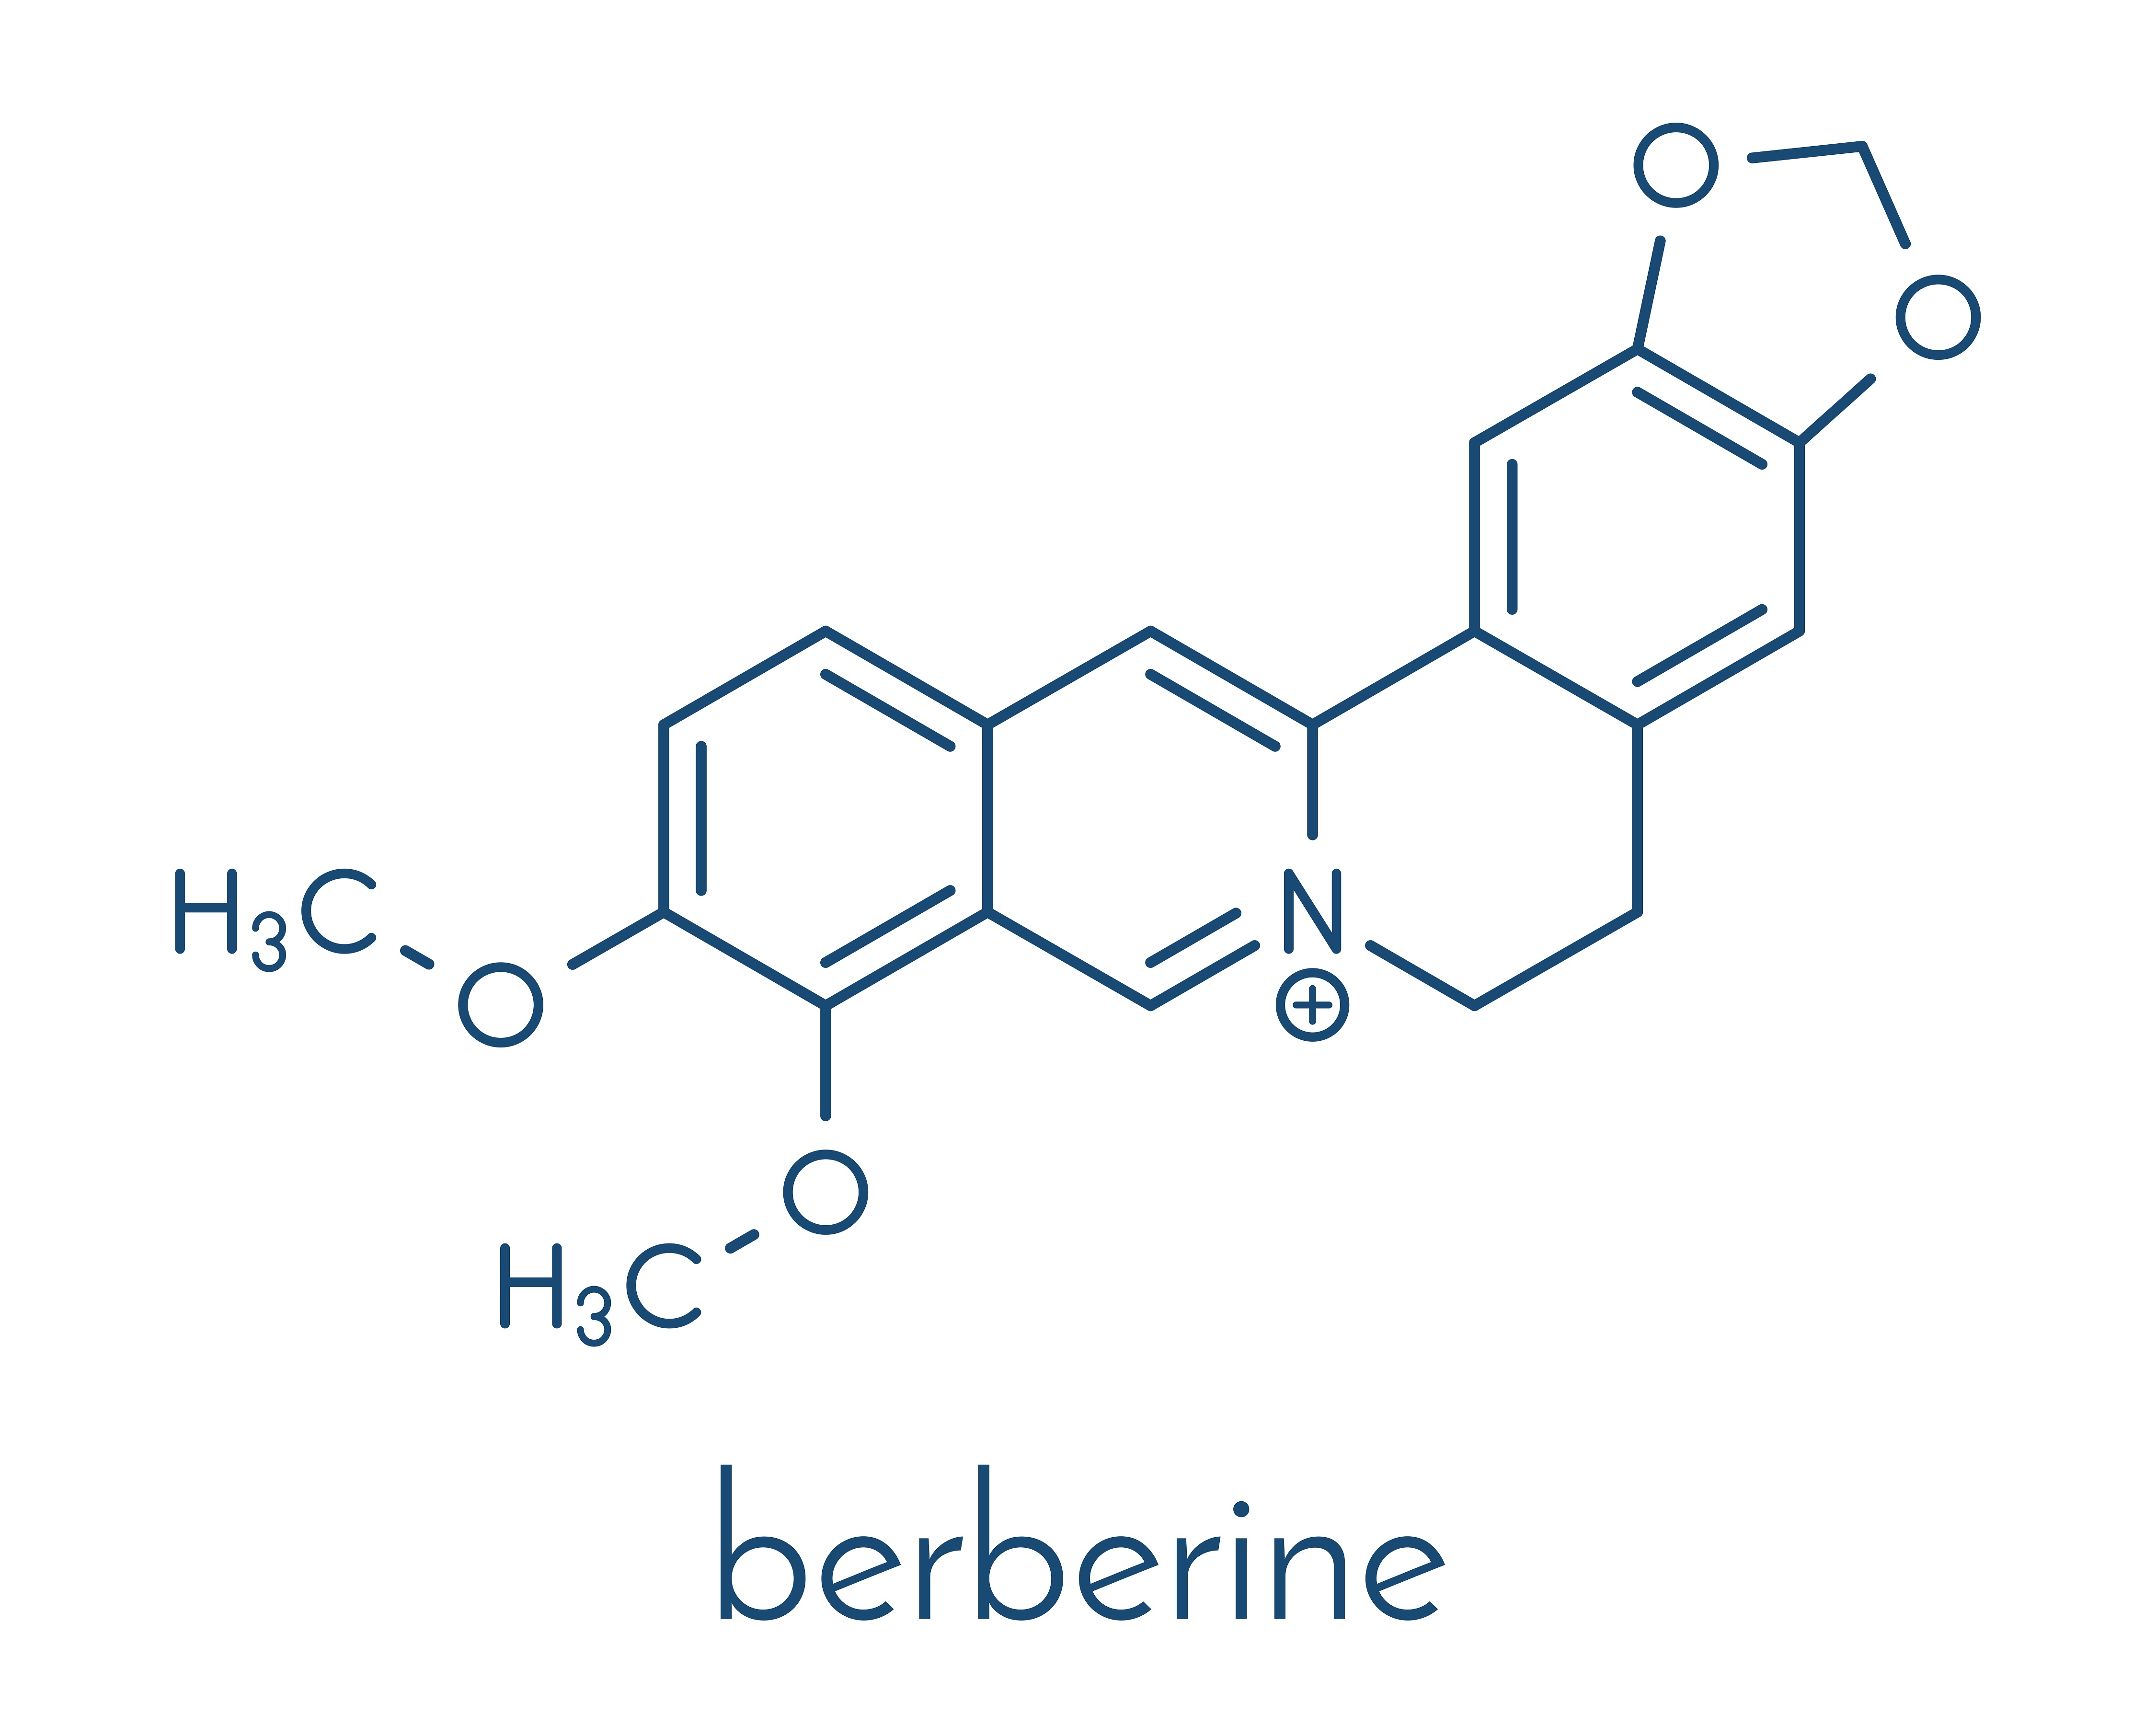 Chemical formula of berberine